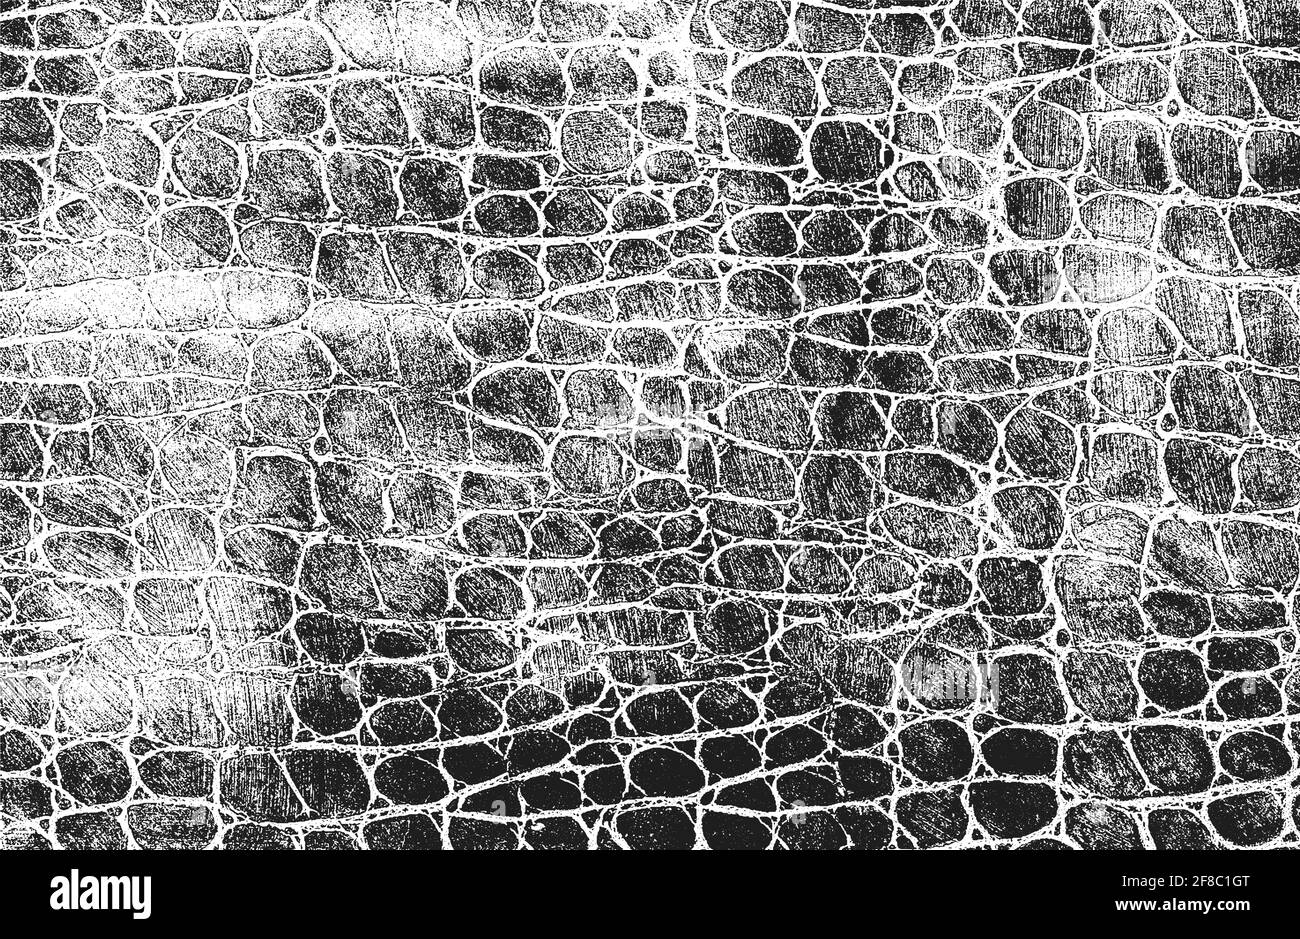 Texture de recouvrement en peau de crocodile ou de serpent, arrière-plan grunge. Illustration vectorielle abstraite de demi-teinte Illustration de Vecteur